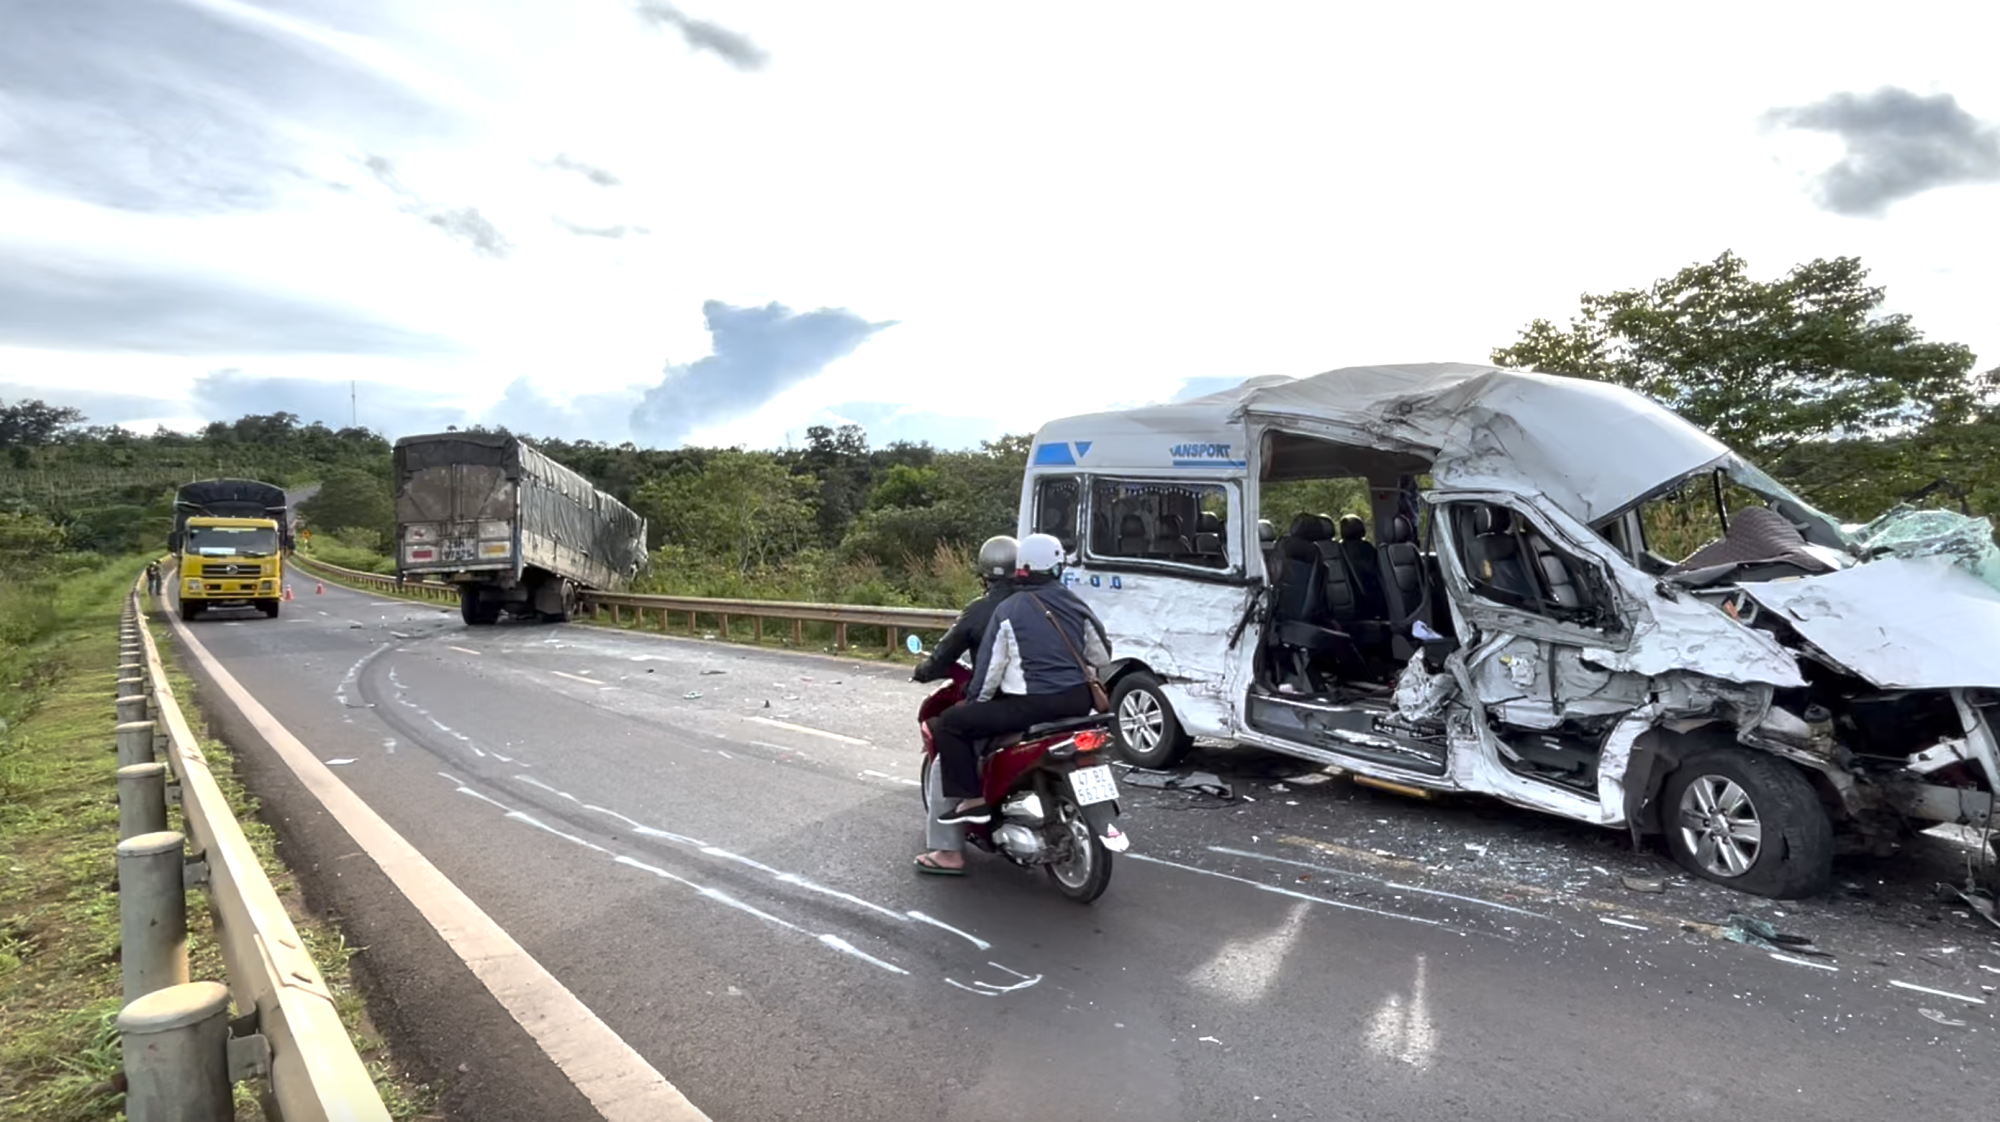 Nhân chứng kể vụ tai nạn 13 người thương vong ở Đắk Lắk: 'Tài xế xe du lịch đã ra tín hiệu nhưng bên kia cứ lao vào” - Ảnh 1